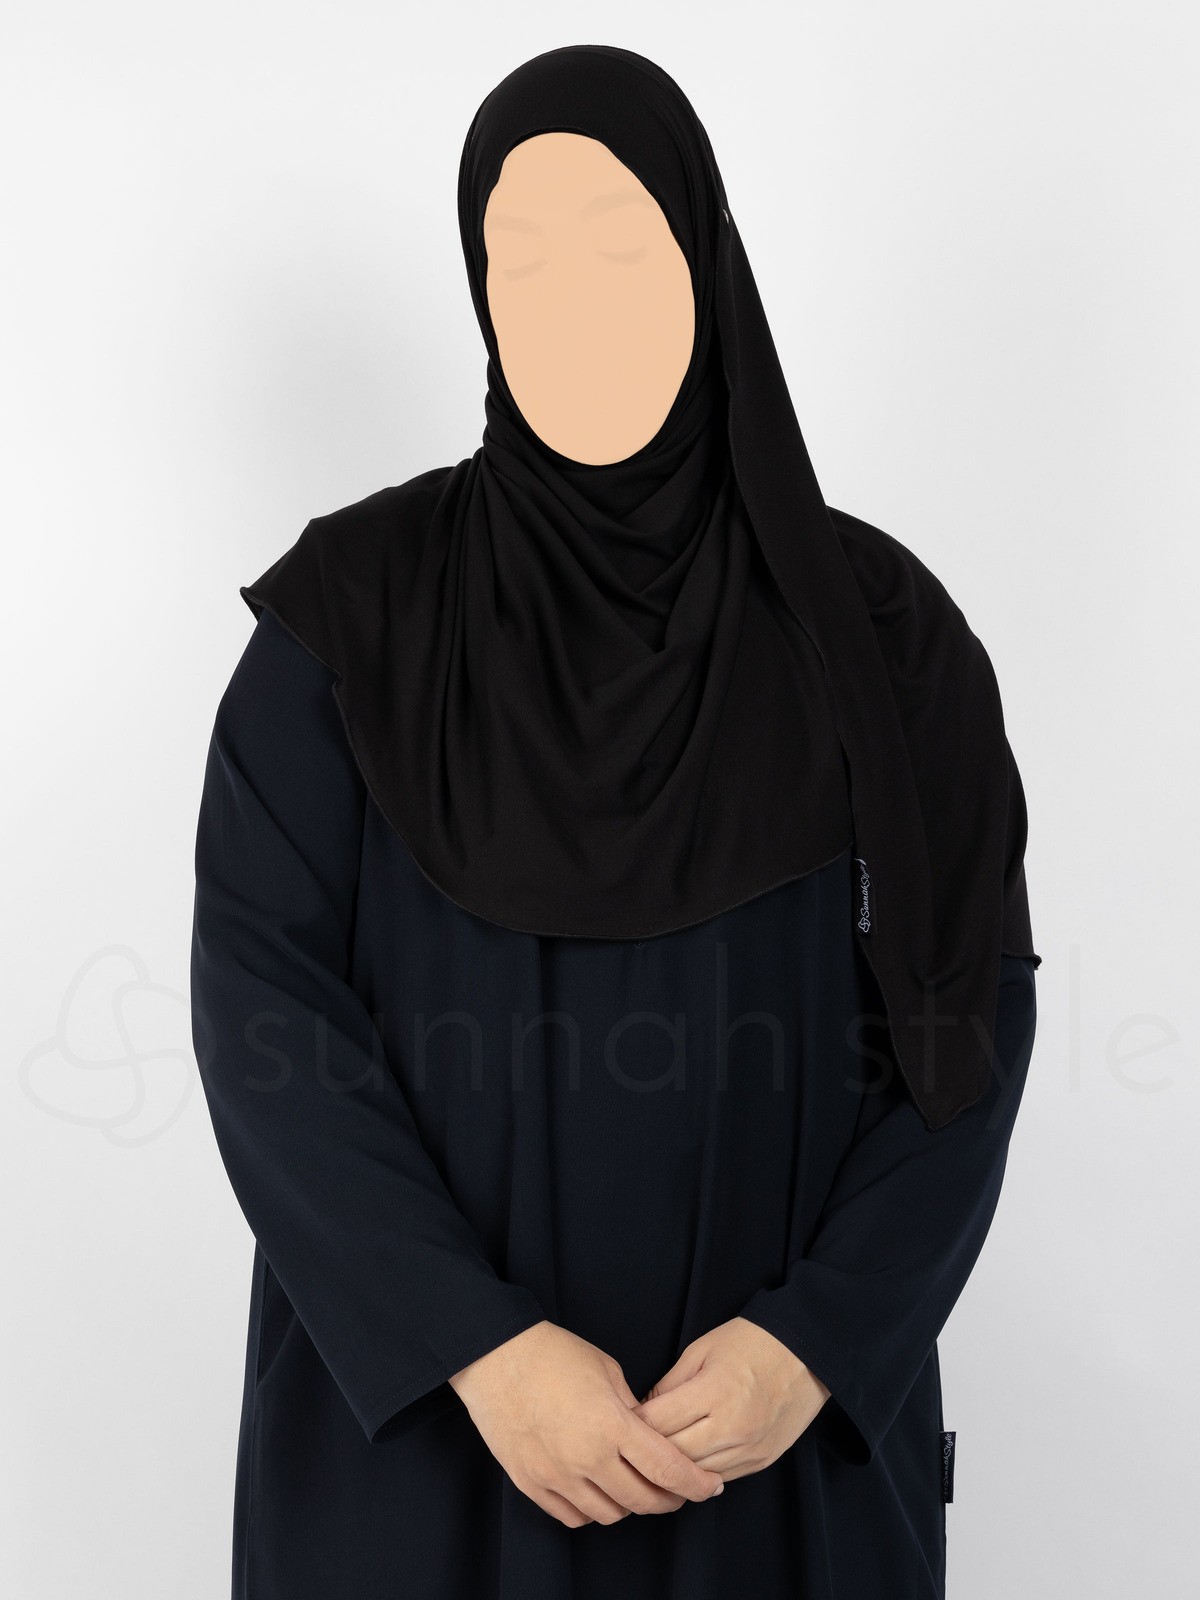 Sunnah Style - Urban Shayla (Soft Jersey) - Standard (Black)